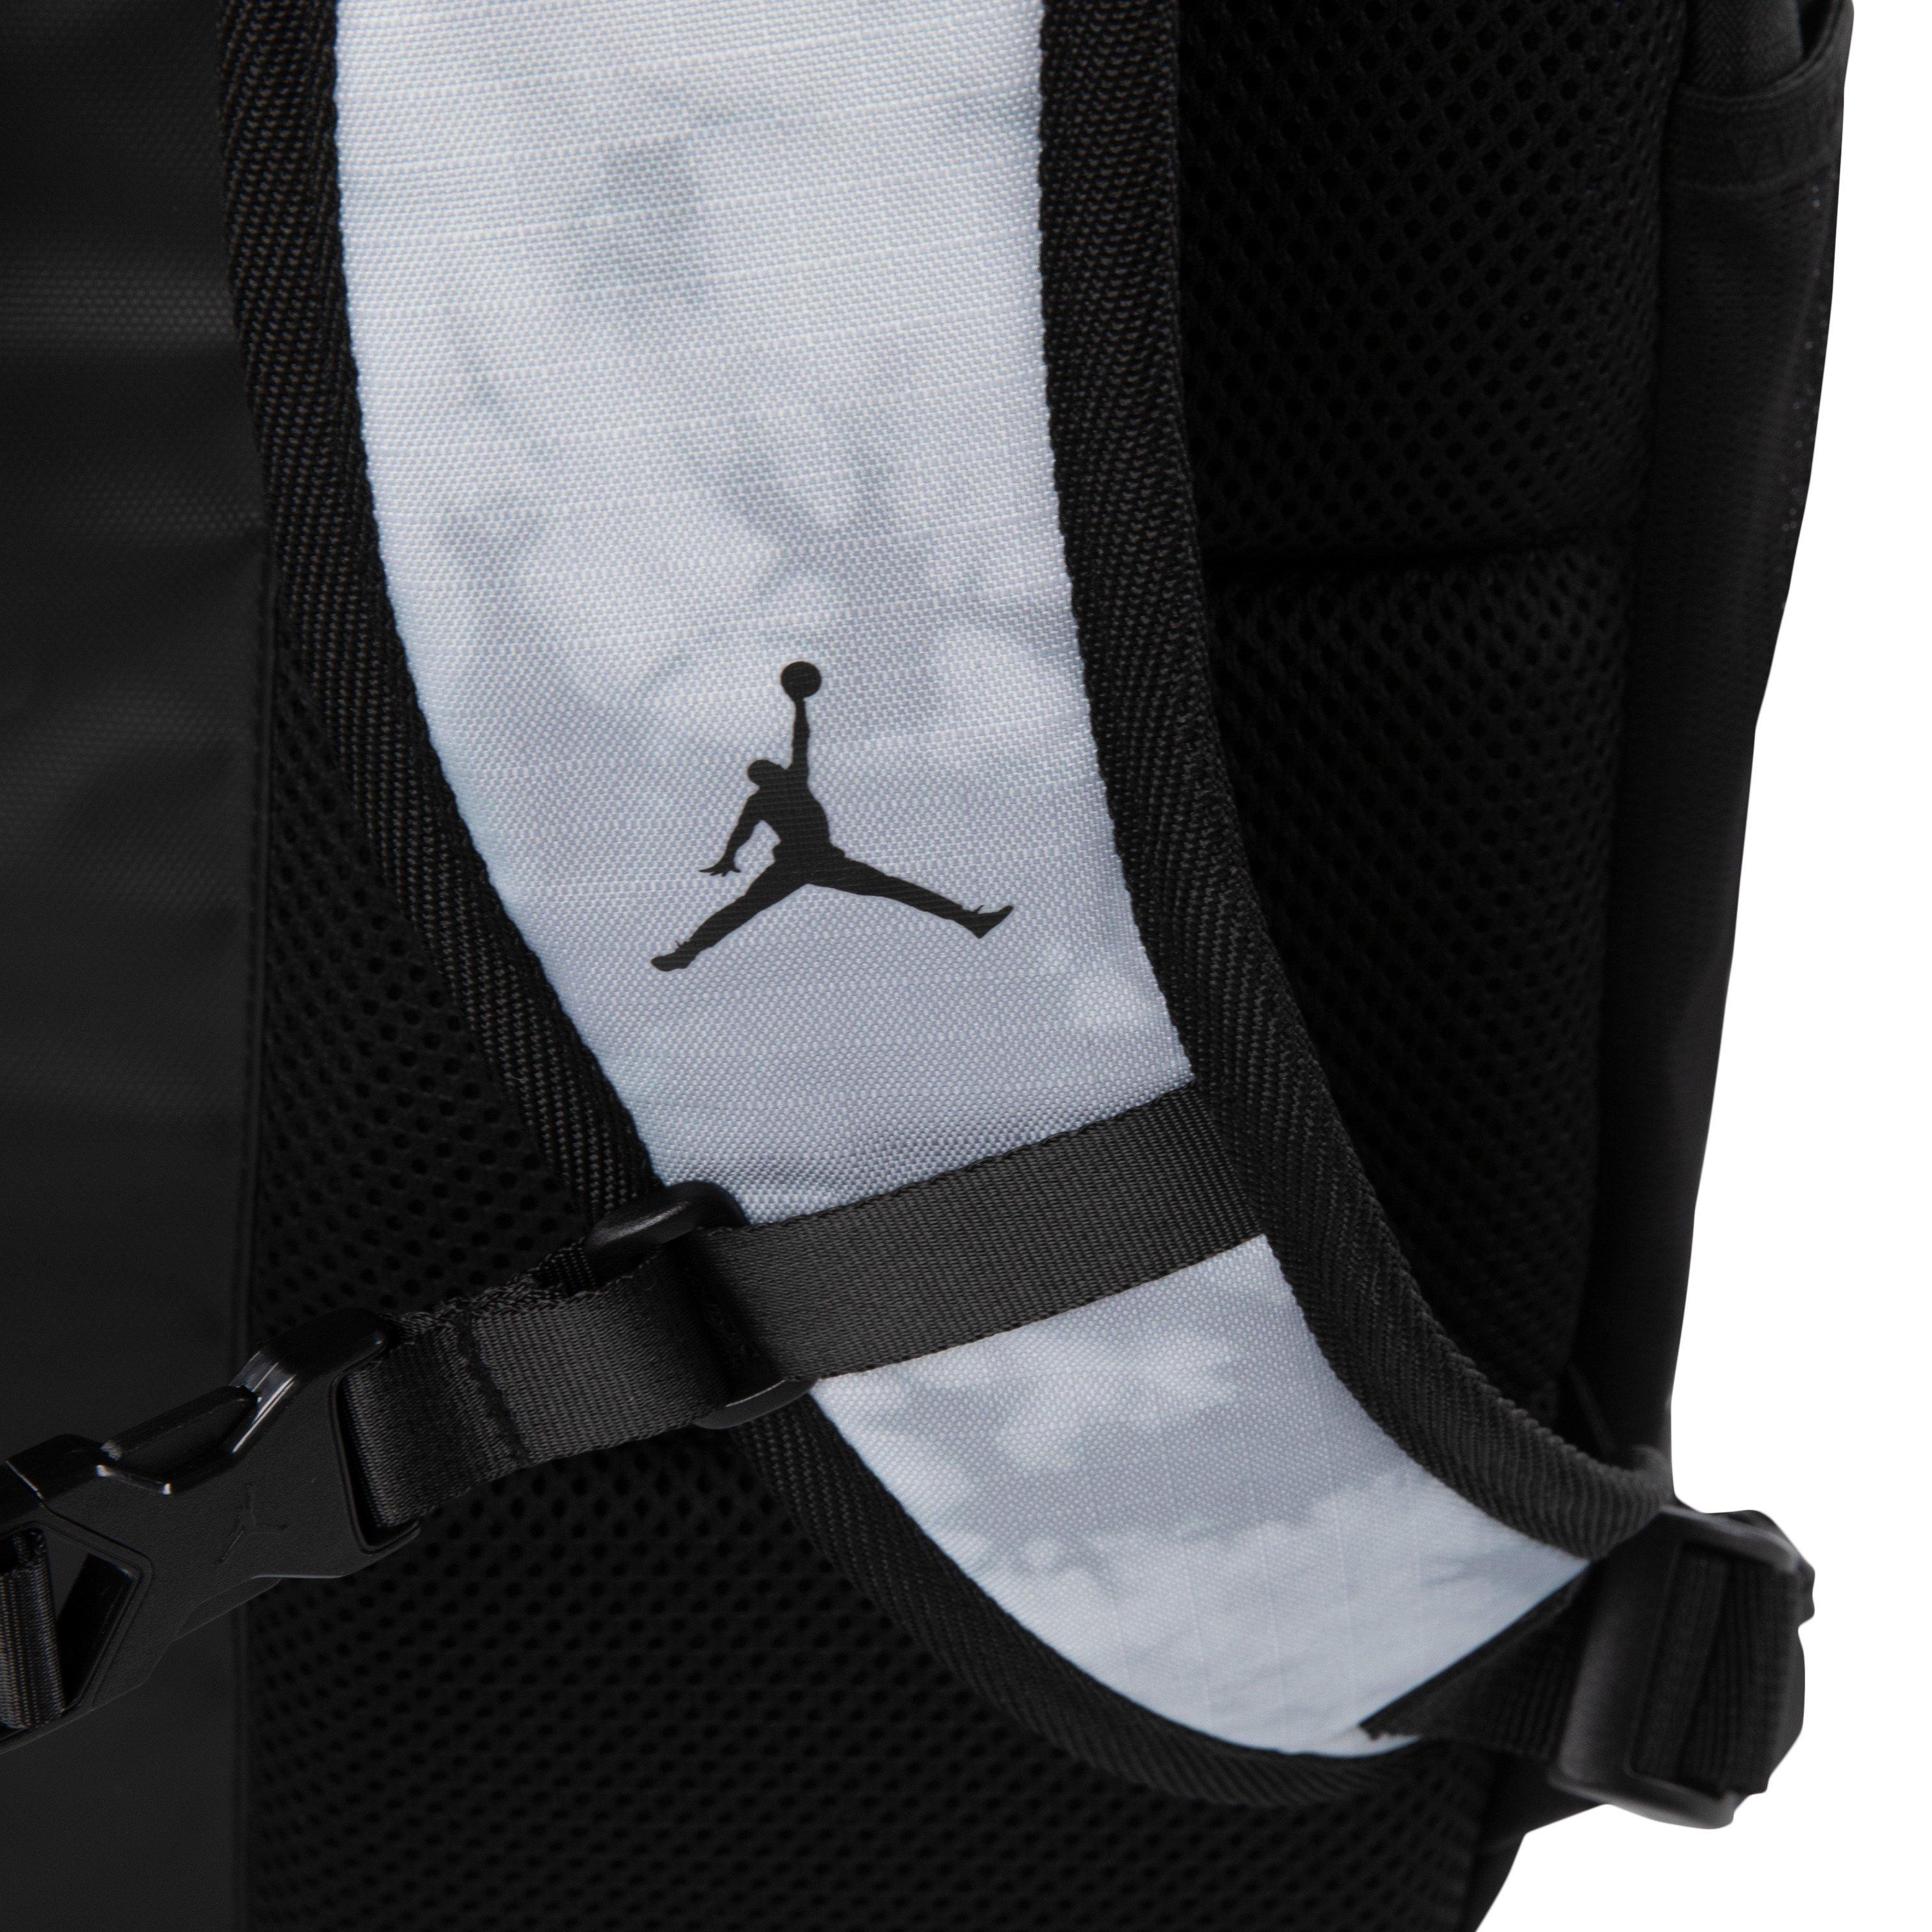 Sac à dos Jordan Velocity Backpack (38 L)